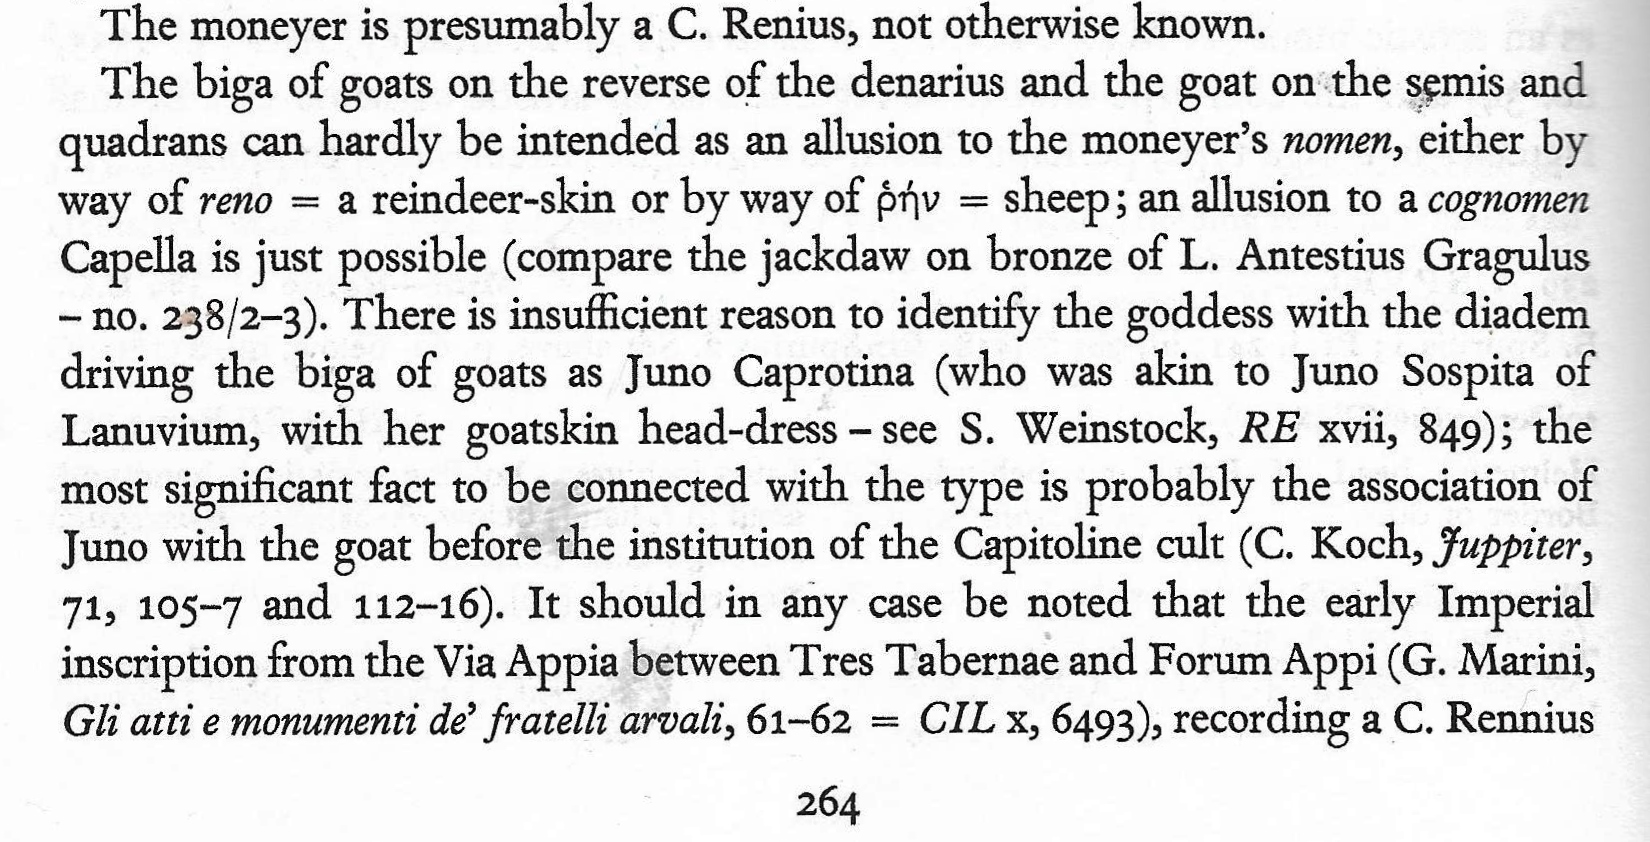 (2) Crawford p. 264 re C. Renius Juno (not Caprotina) goat biga.jpg